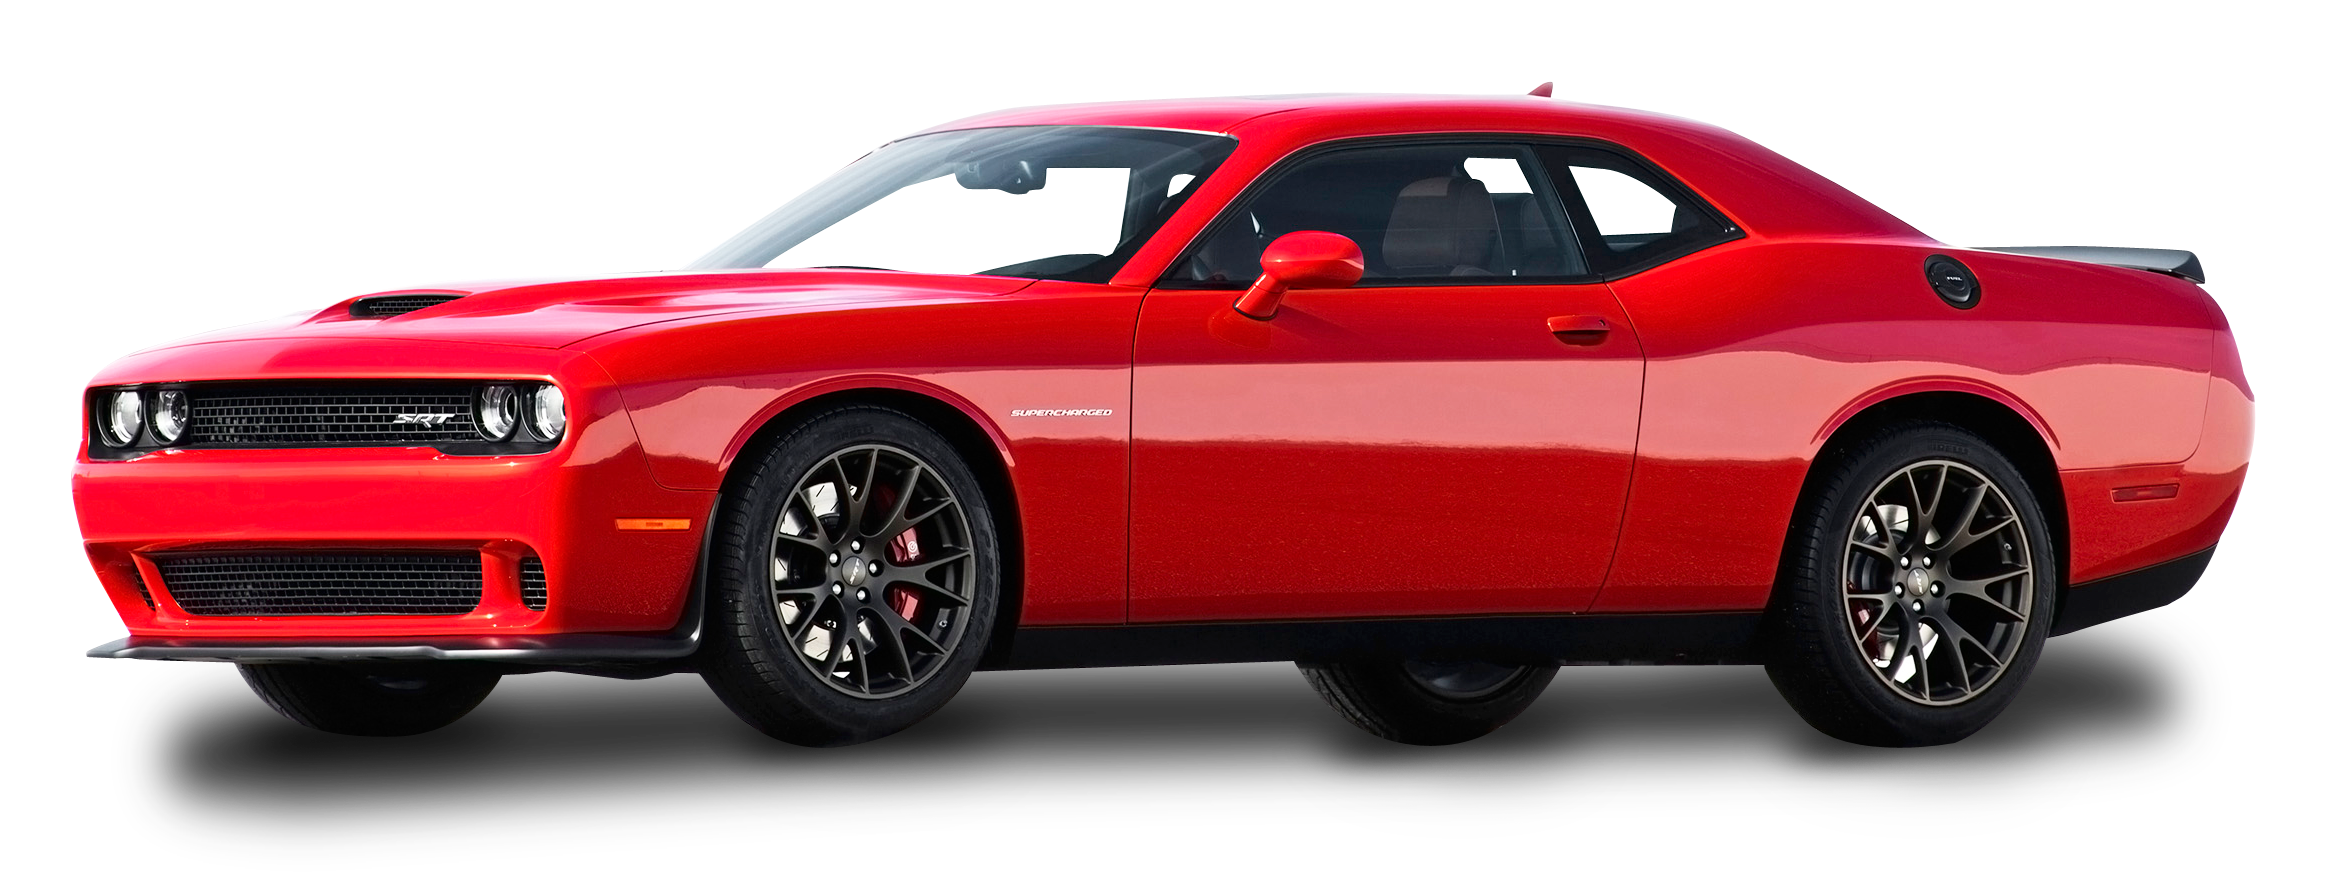 Red Dodge Challenger Car